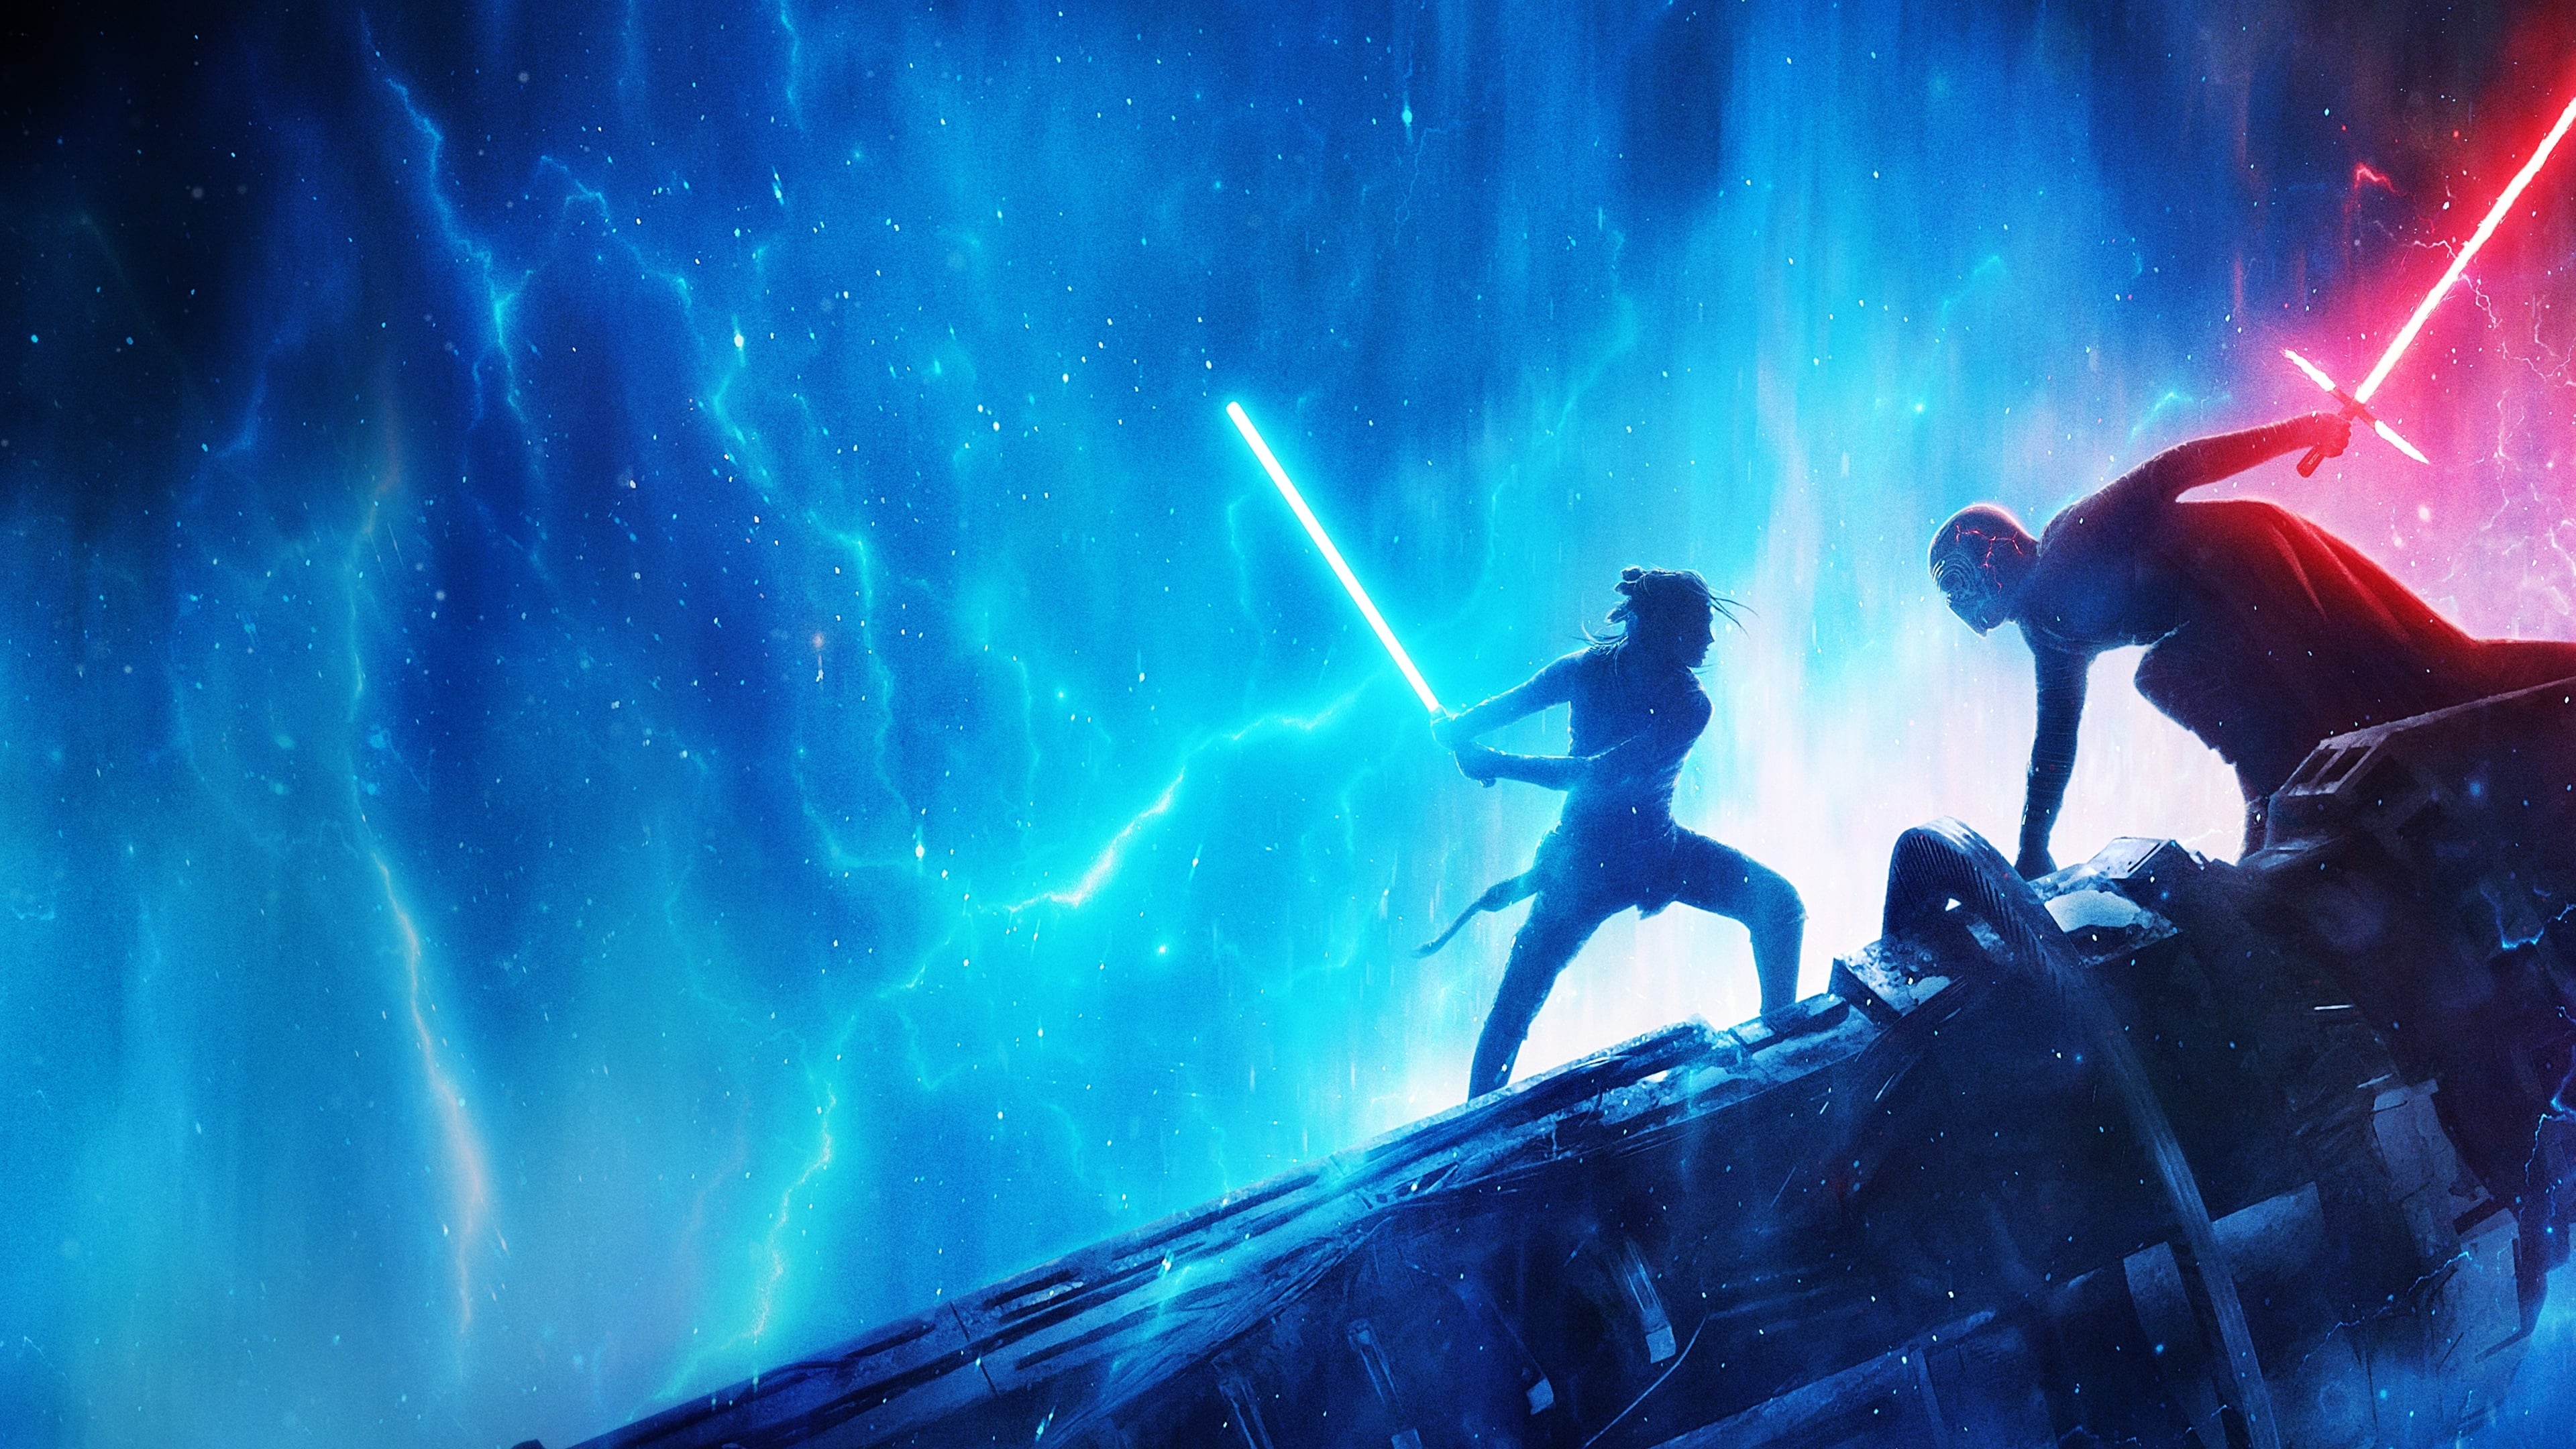 Războiul stelelor - Episodul IX: Skywalker - Ascensiunea (2019)